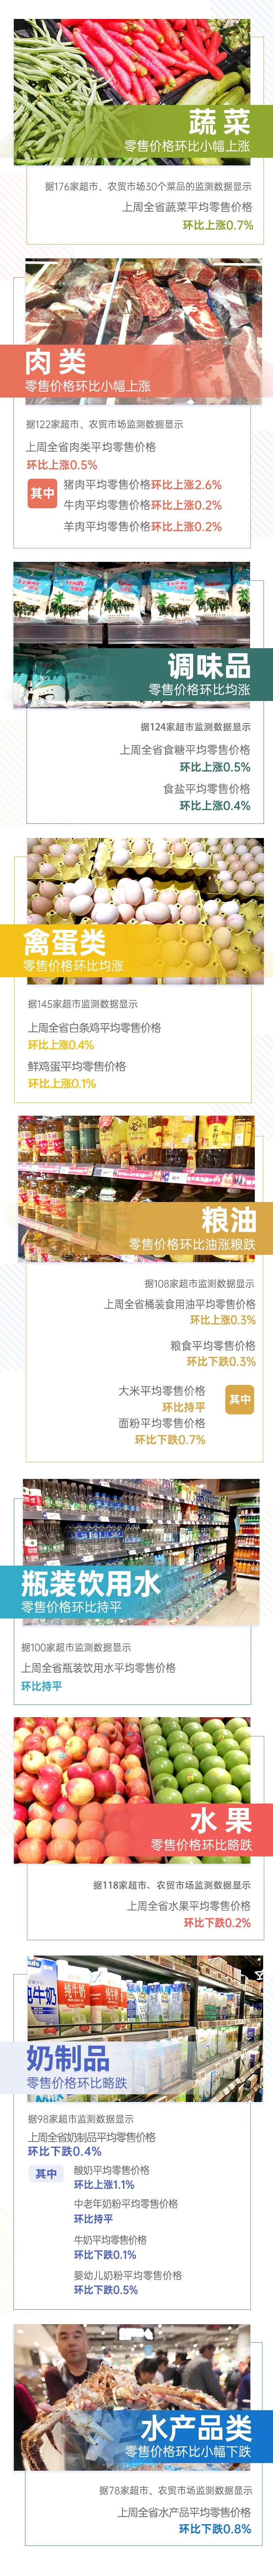 【民生】7涨1平4跌！上周云南省生活必需品零售价格情况来了